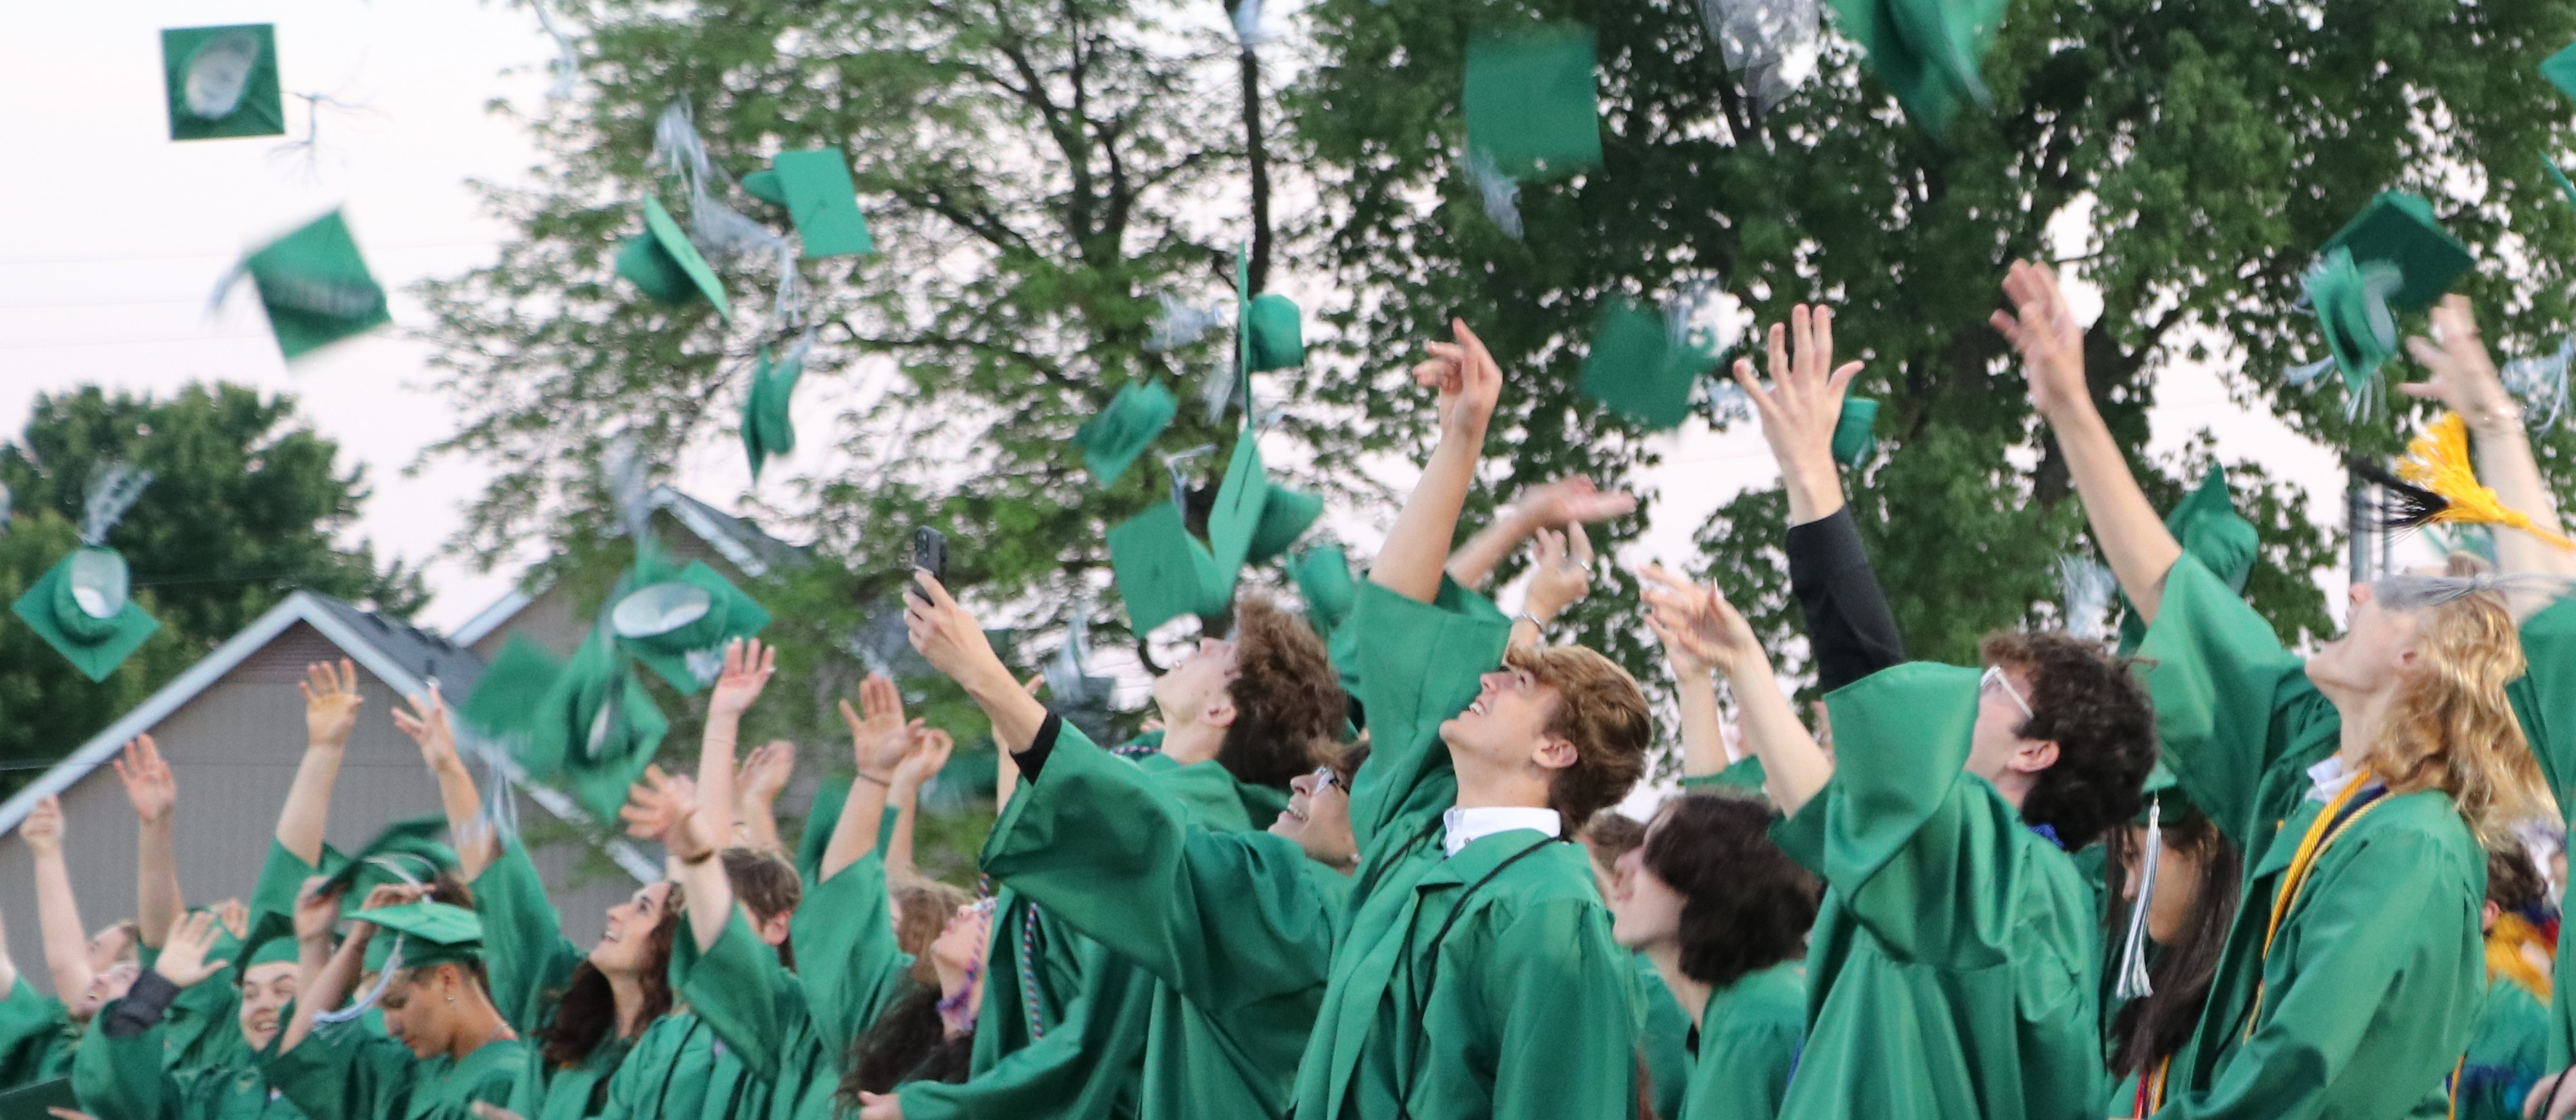 Graduates throw hats in air